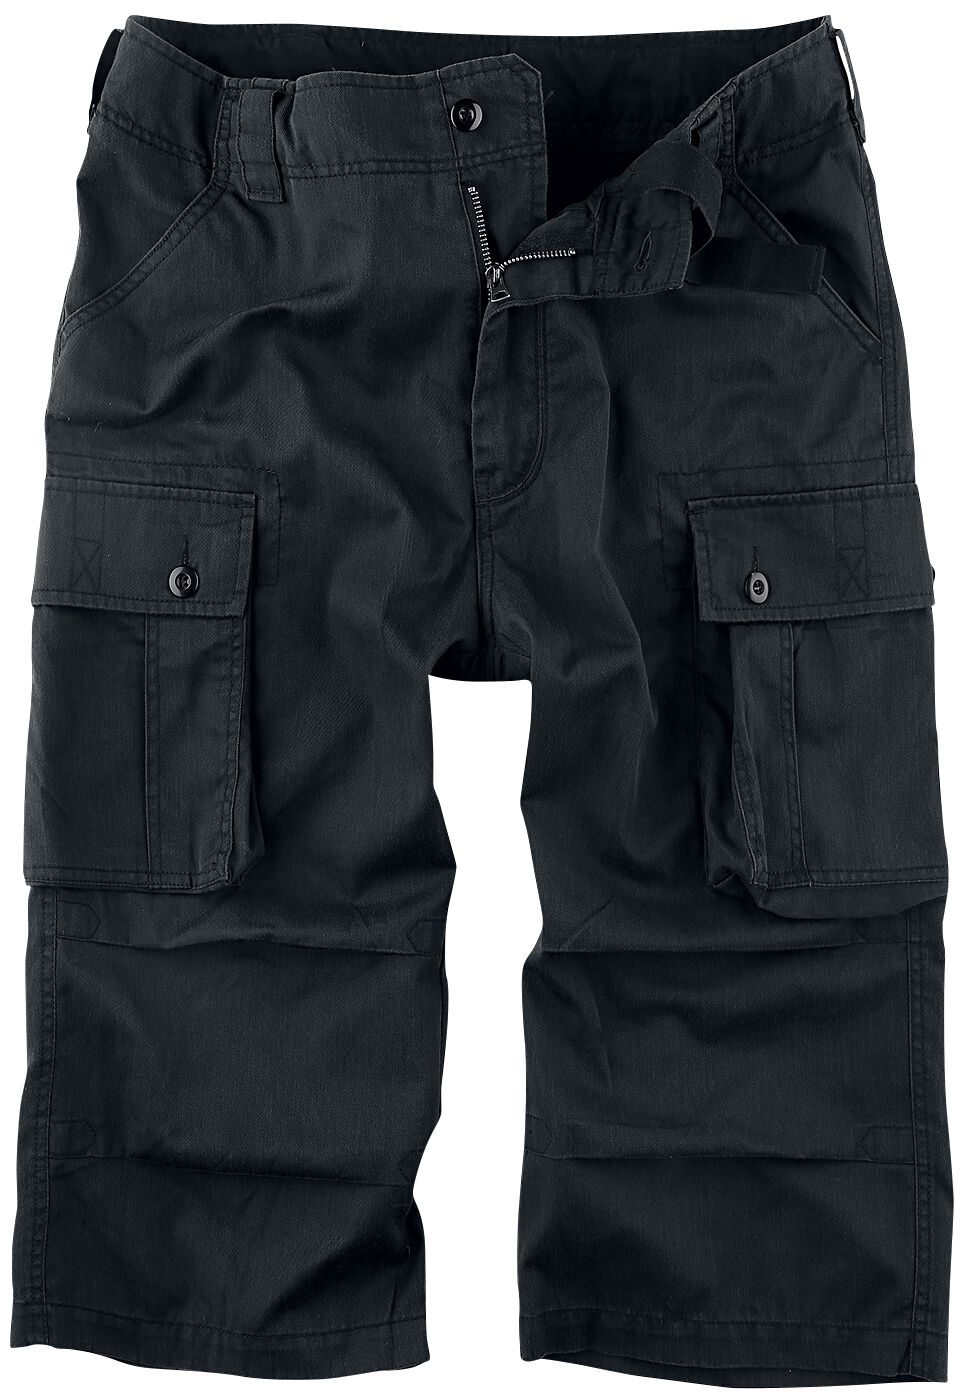 Cargo Shorts von Brandit - Cody 3/4 Vintage Short - S bis 5XL - für Männer - schwarz